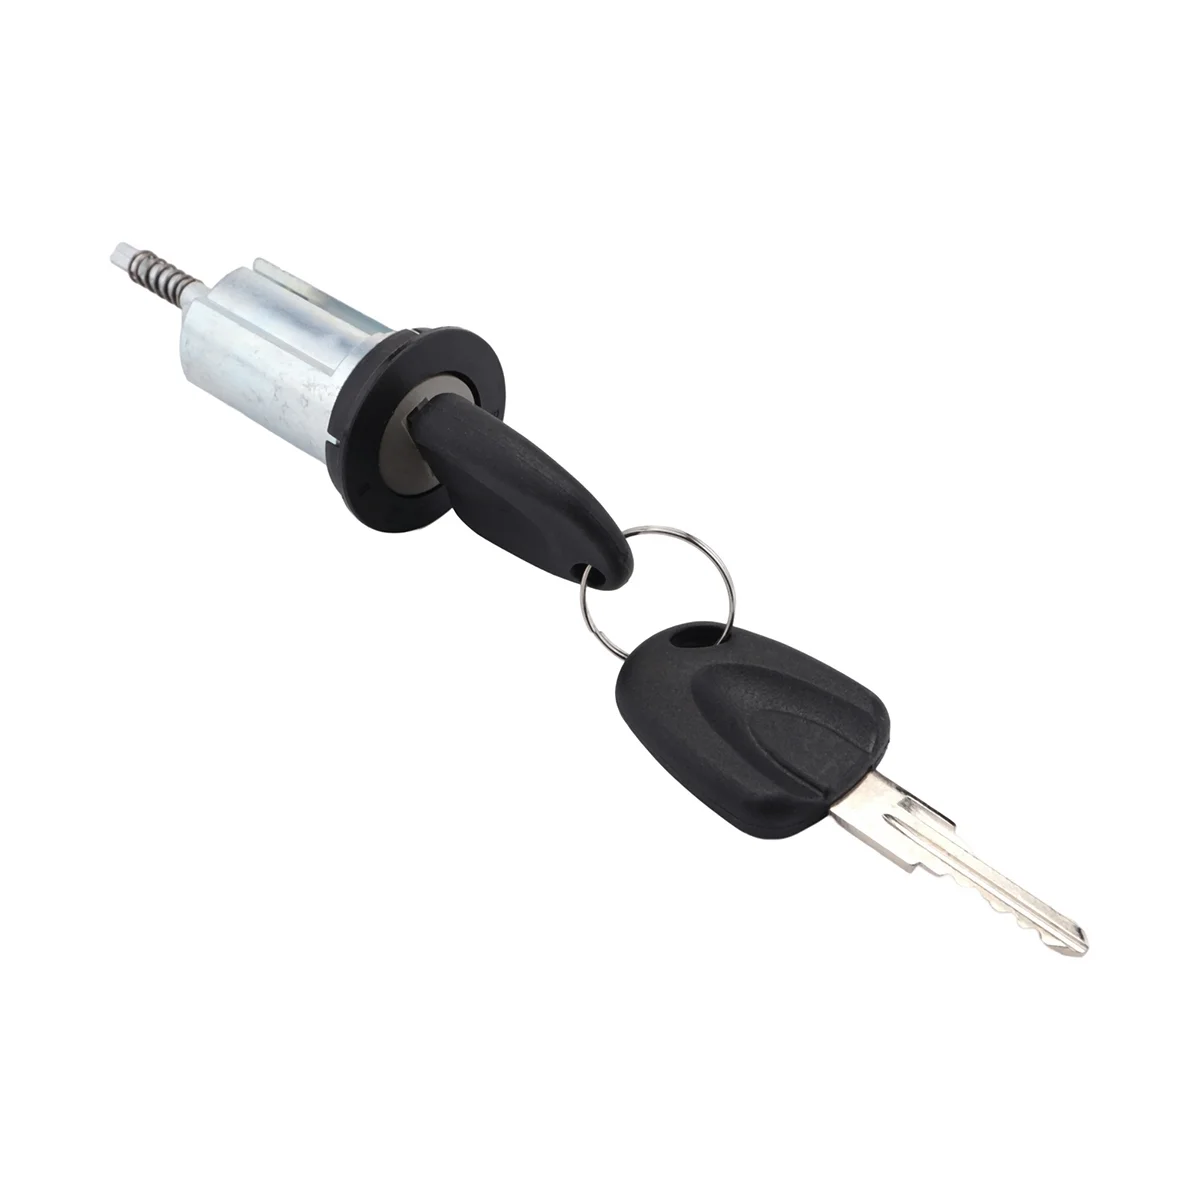 Зажигание Выключатель стартера Цилиндровый замок с ключами для Opel Ascona C Vauxhall Corsa 0913694 09115863